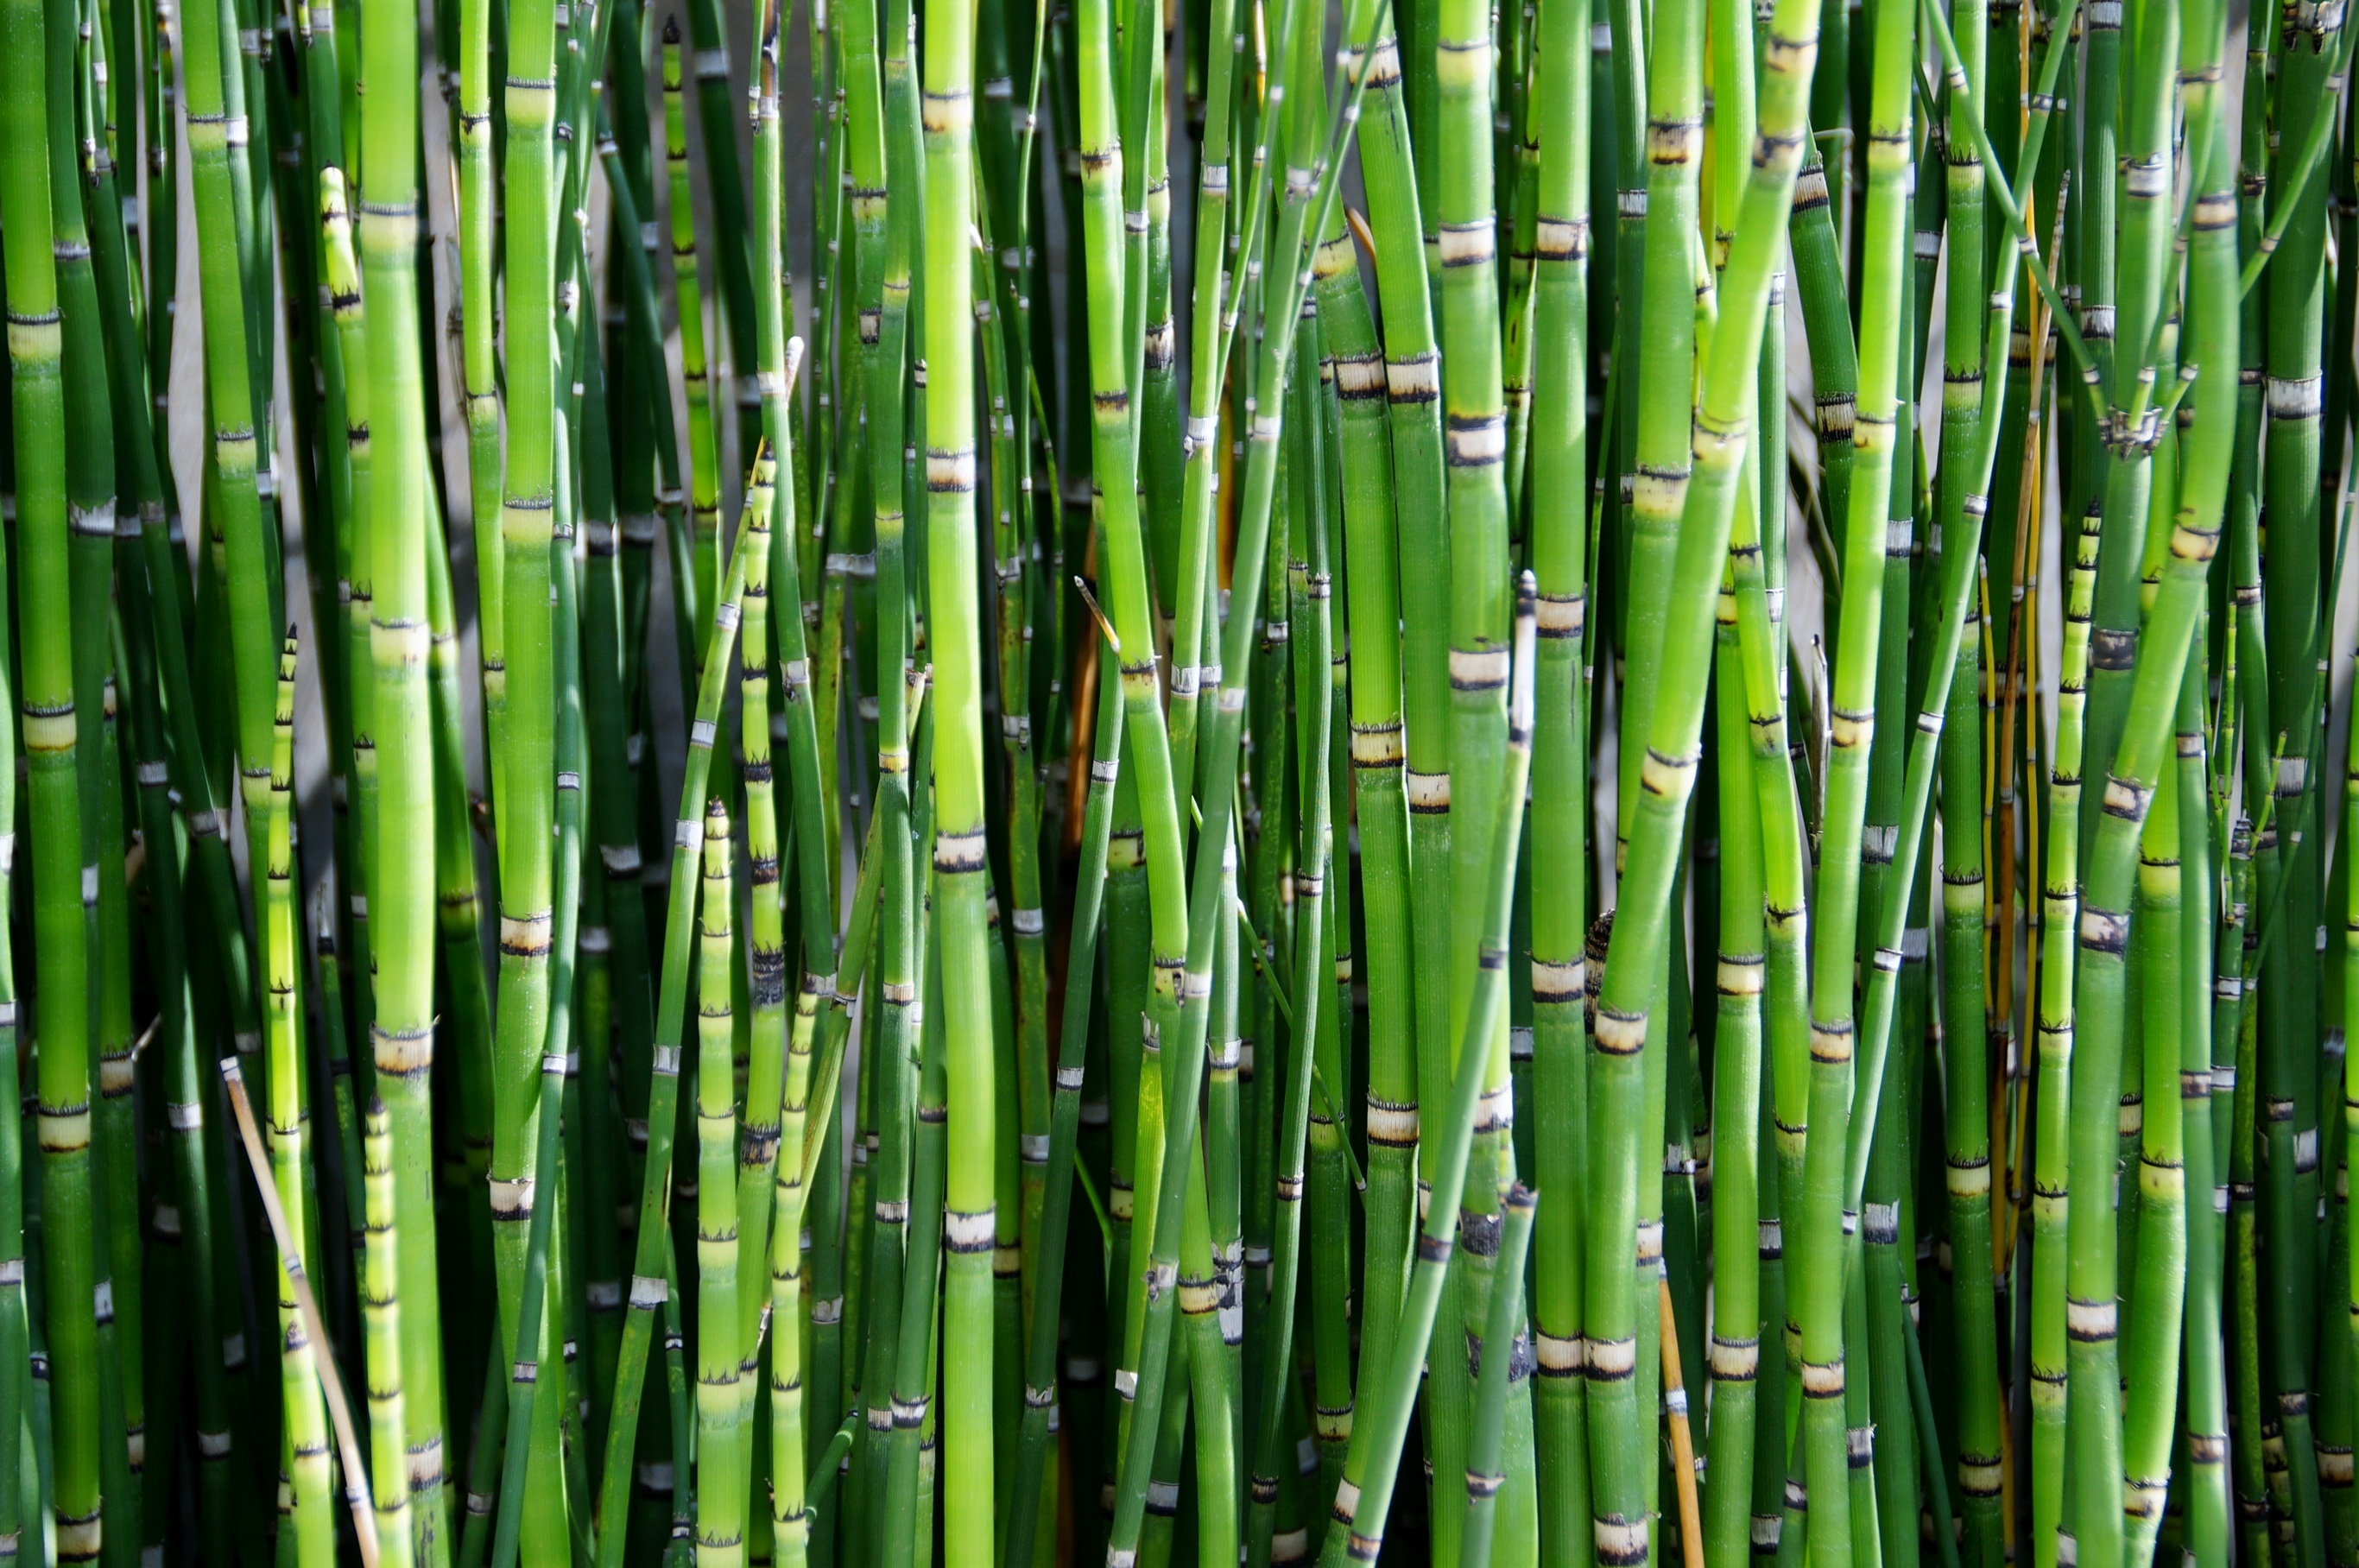 Бамбуковый лес с новыми растениями · бесплатная фотография от Fonwall